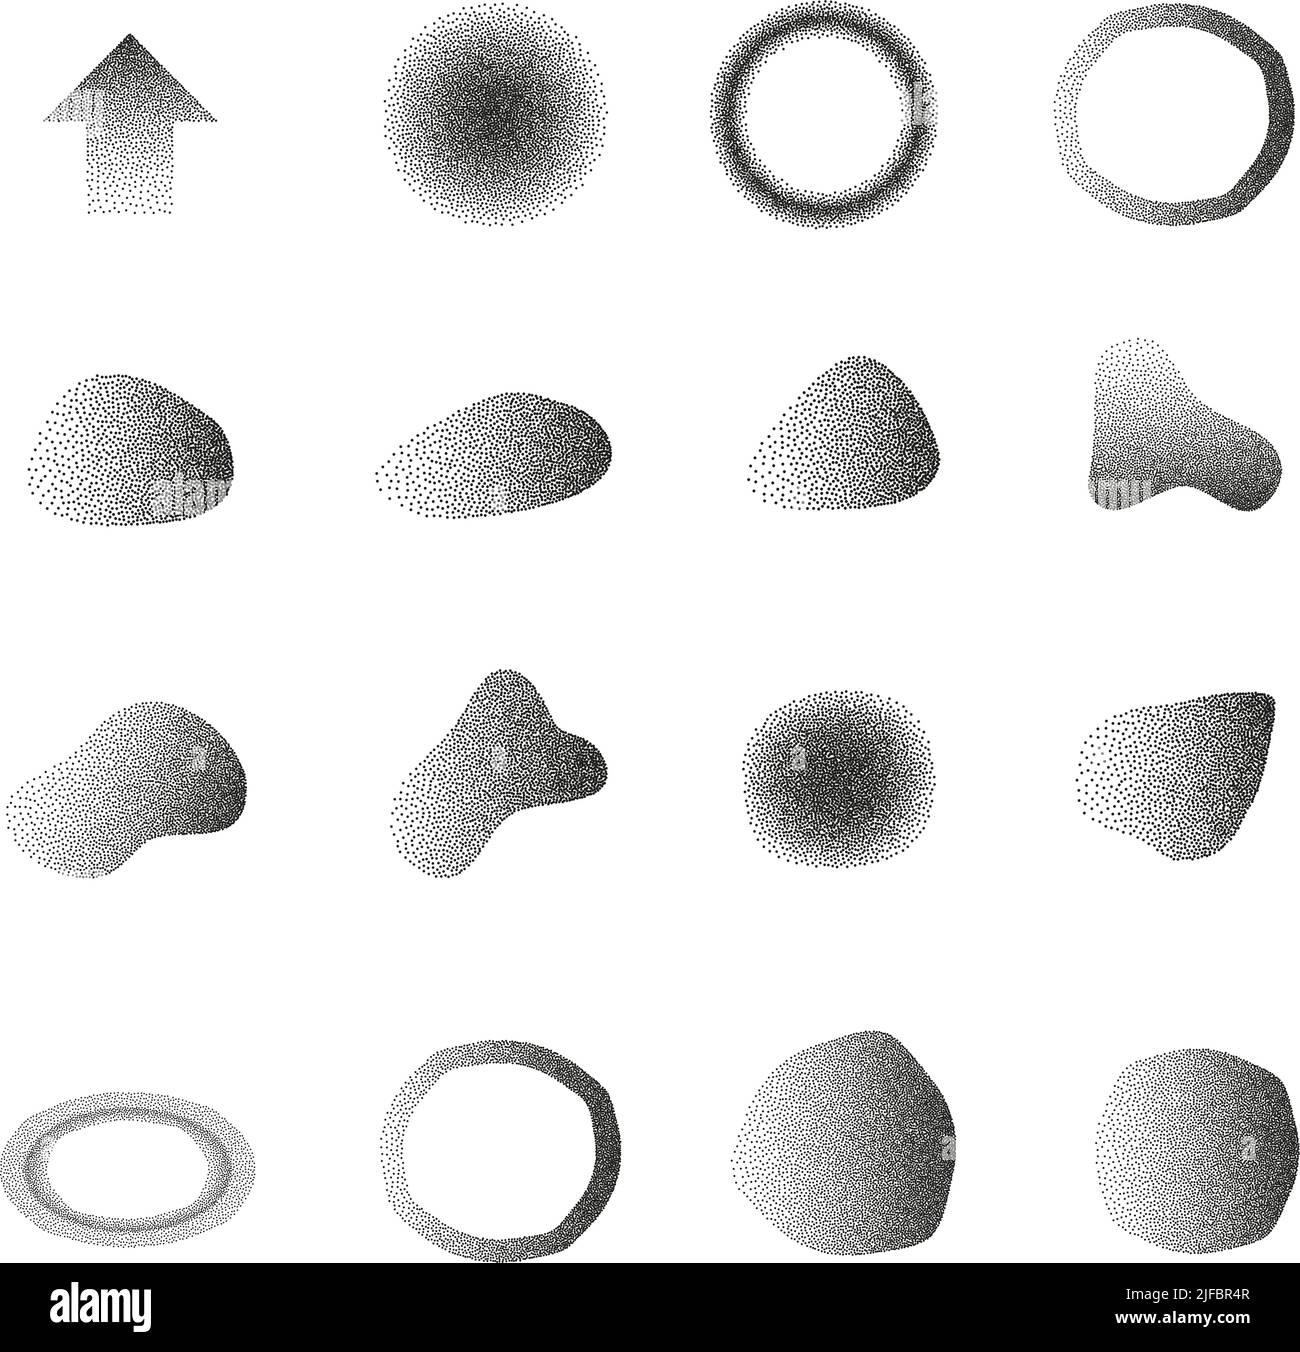 collection de formes abstraites et géométriques avec effet de gradient à crépi isolé sur fond blanc, illustration vectorielle d'élément de conception Illustration de Vecteur